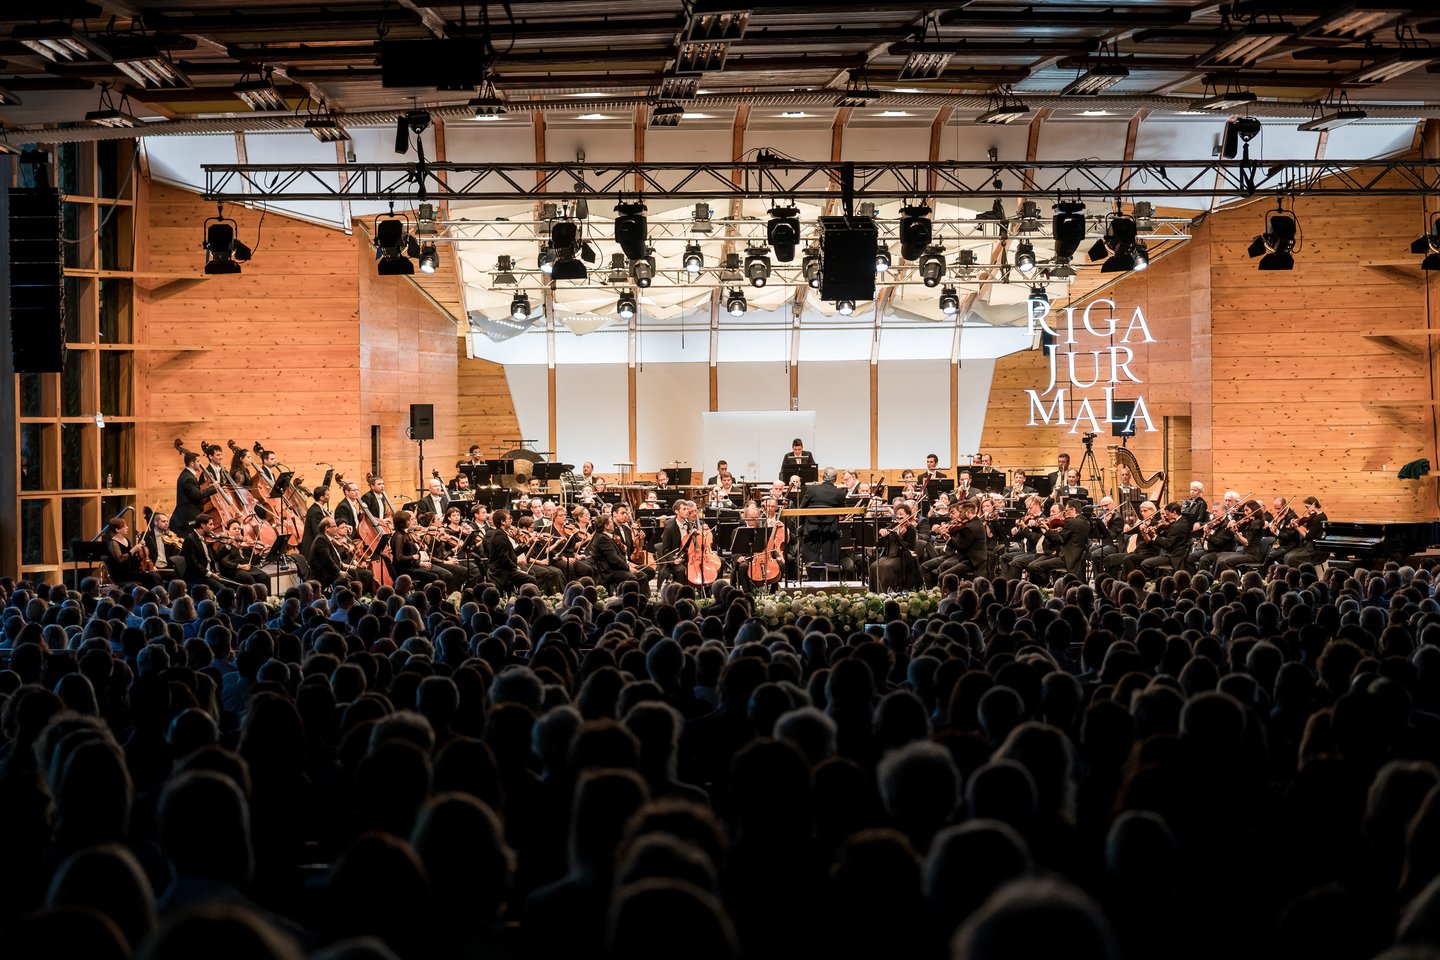  Rygos Jūrmalos muzikos festivalis daro metų pertrauką.